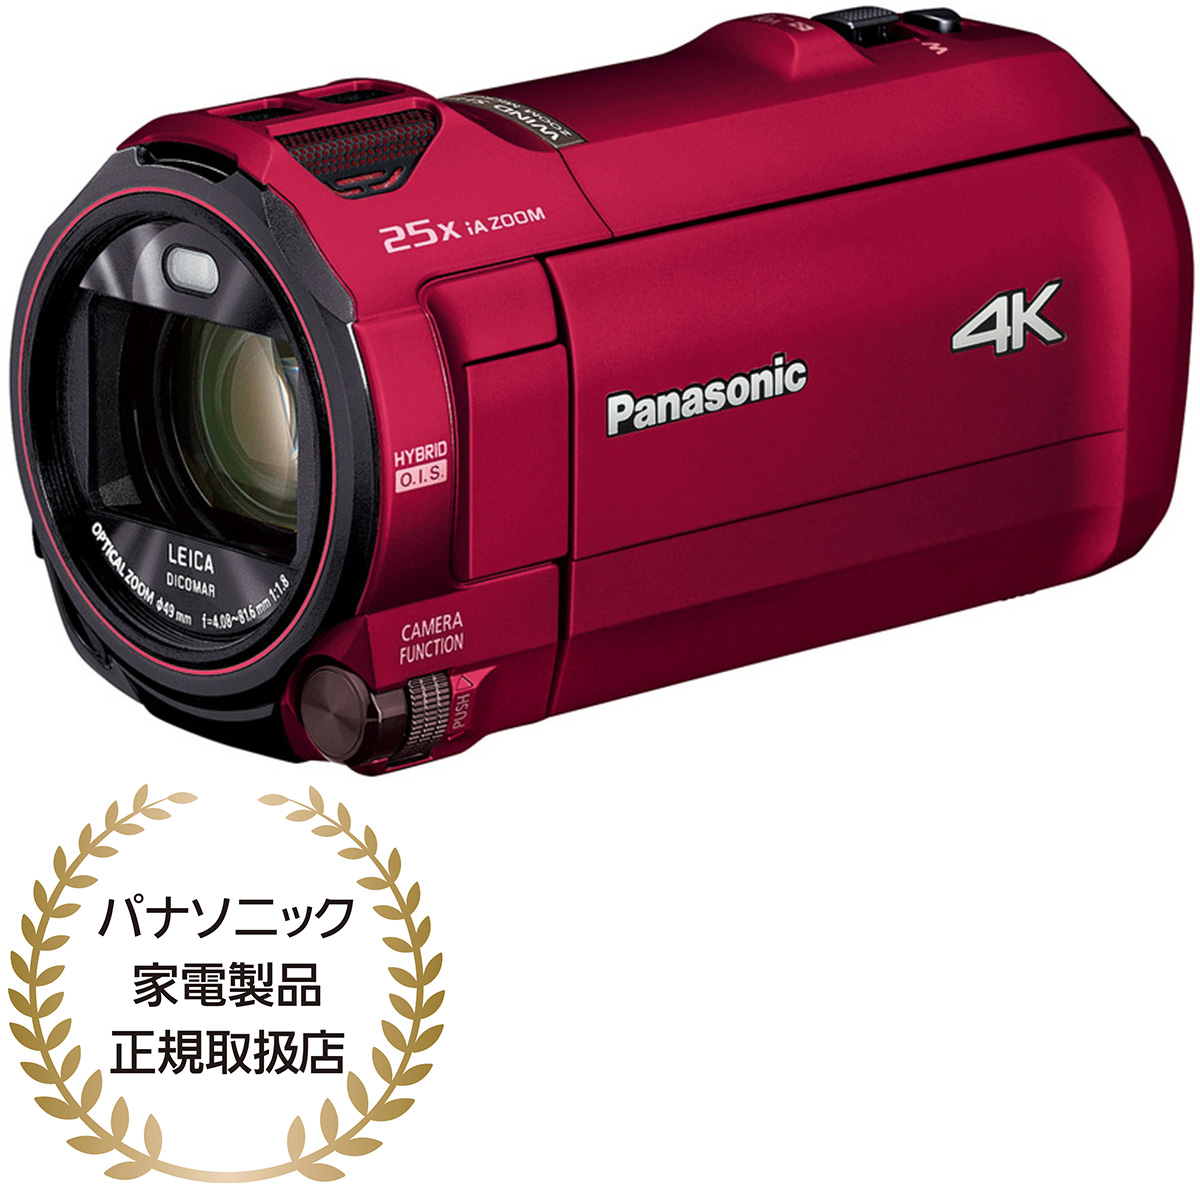 ☆お求めやすく価格改定☆ Panasonic デジタル4Kビデオカメラ レッド